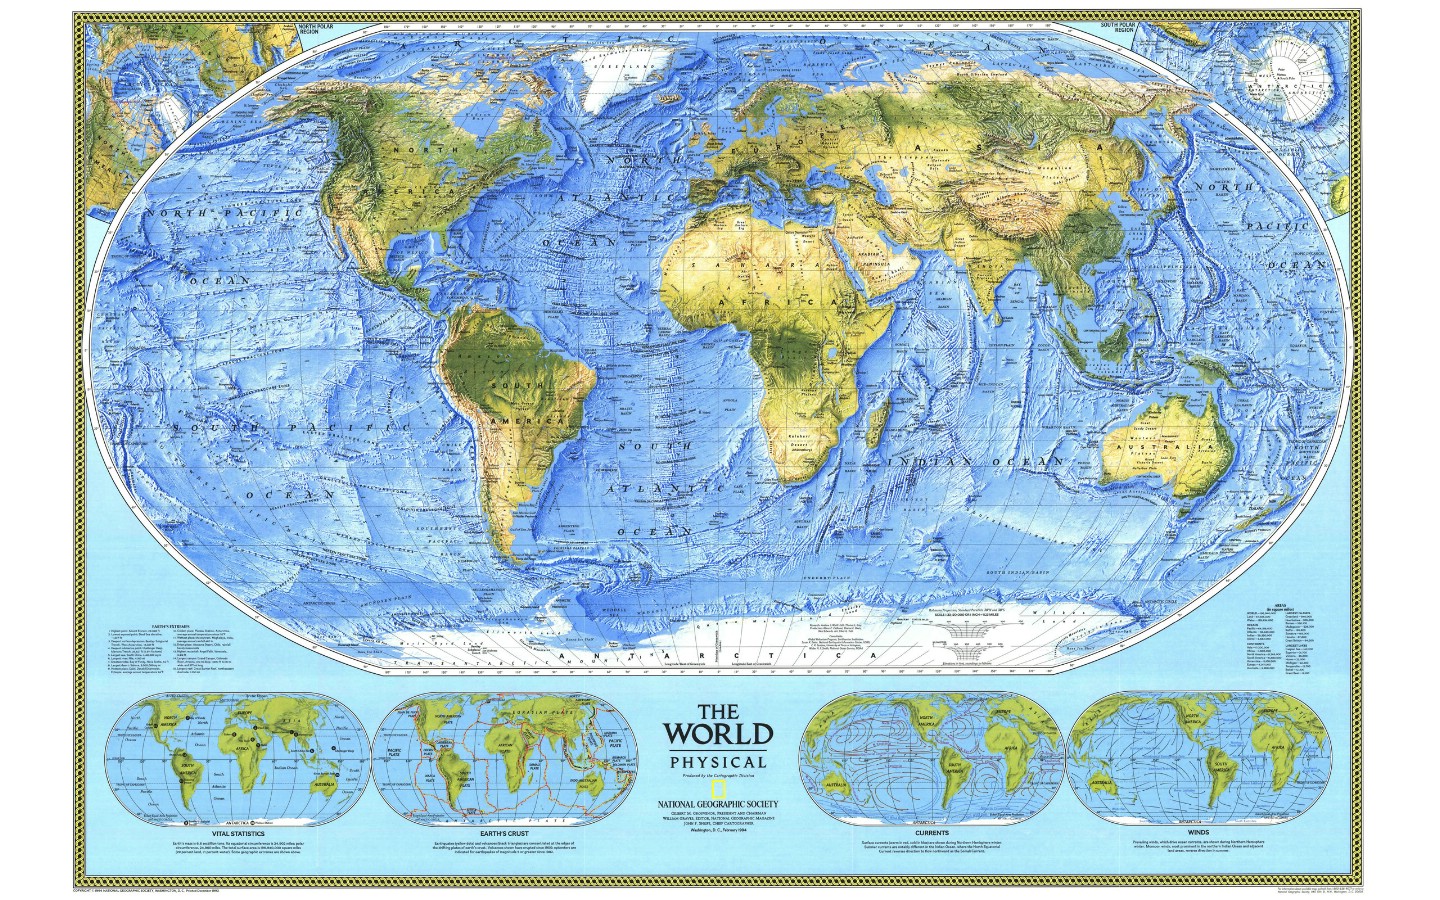 壁纸1440x900超大世界地图 1 2壁纸 未归类 超大世界地图 第一辑壁纸 未归类 超大世界地图 第一辑图片 未归类 超大世界地图 第一辑素材 其他壁纸 其他图库 其他图片素材桌面壁纸